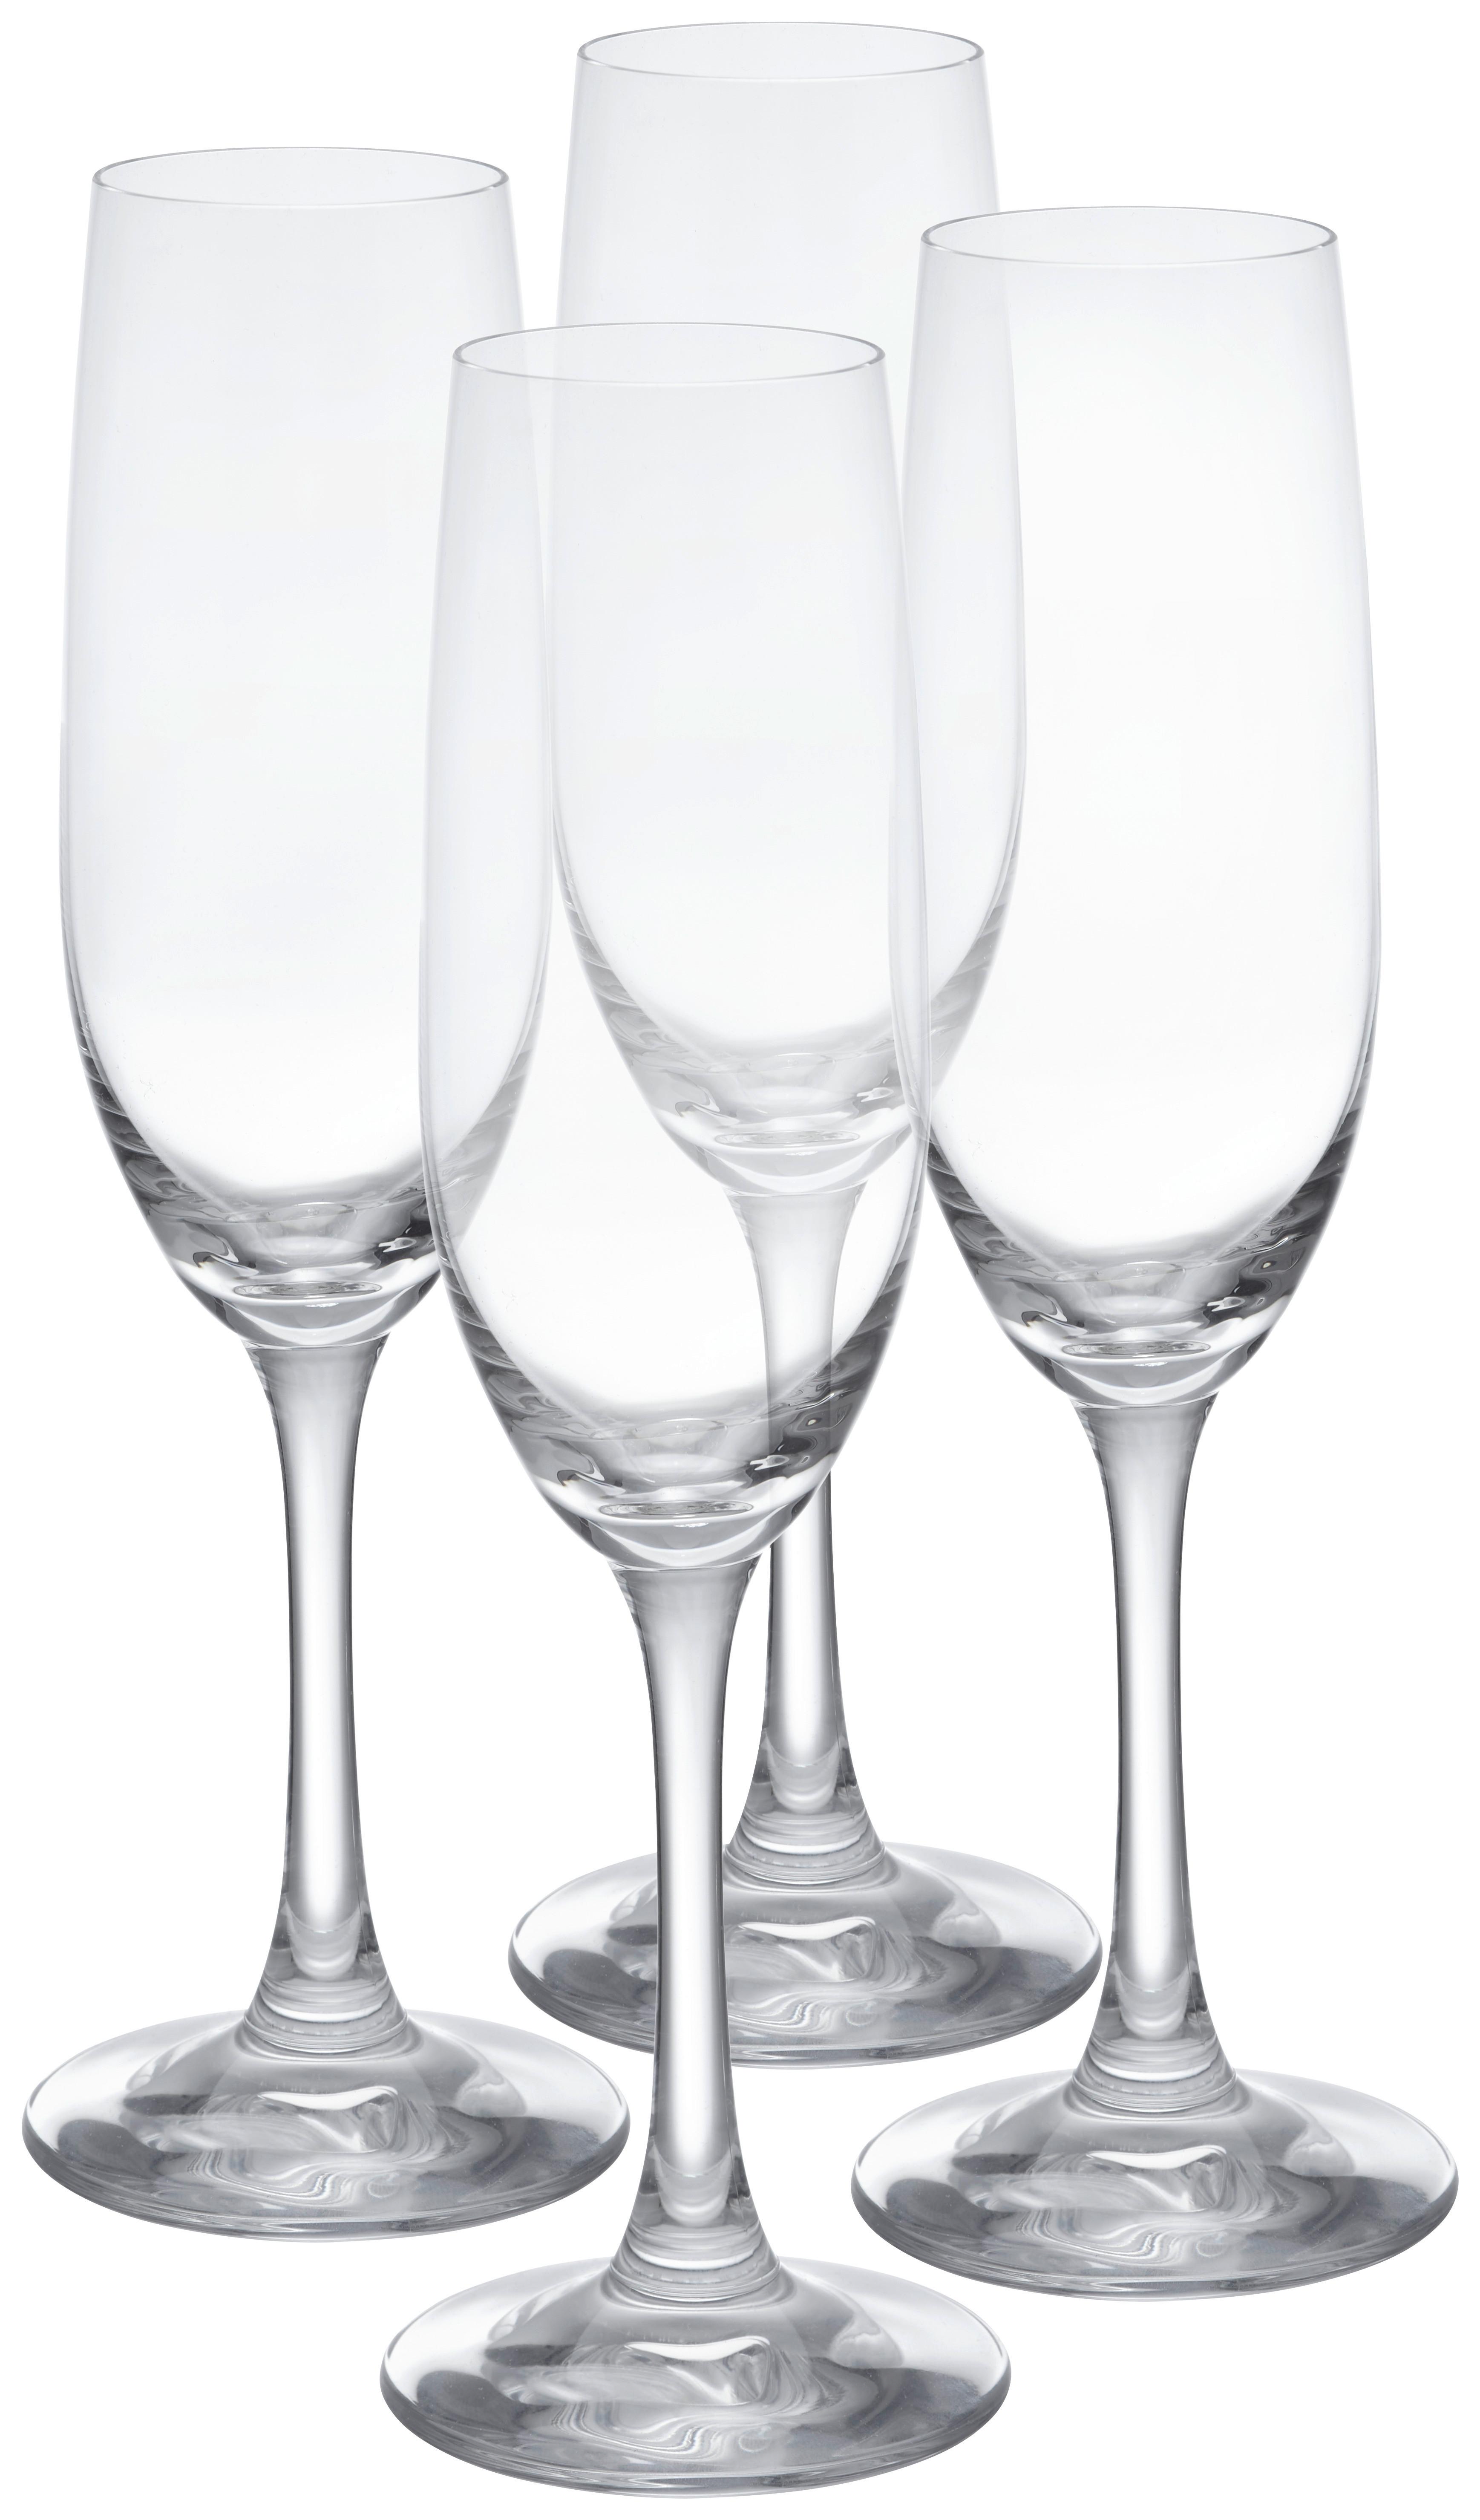 Gläserset Winelovers in Klar, 4-teilig - Klar, Modern, Glas (6,8/21,9/6,8cm) - Spiegelau